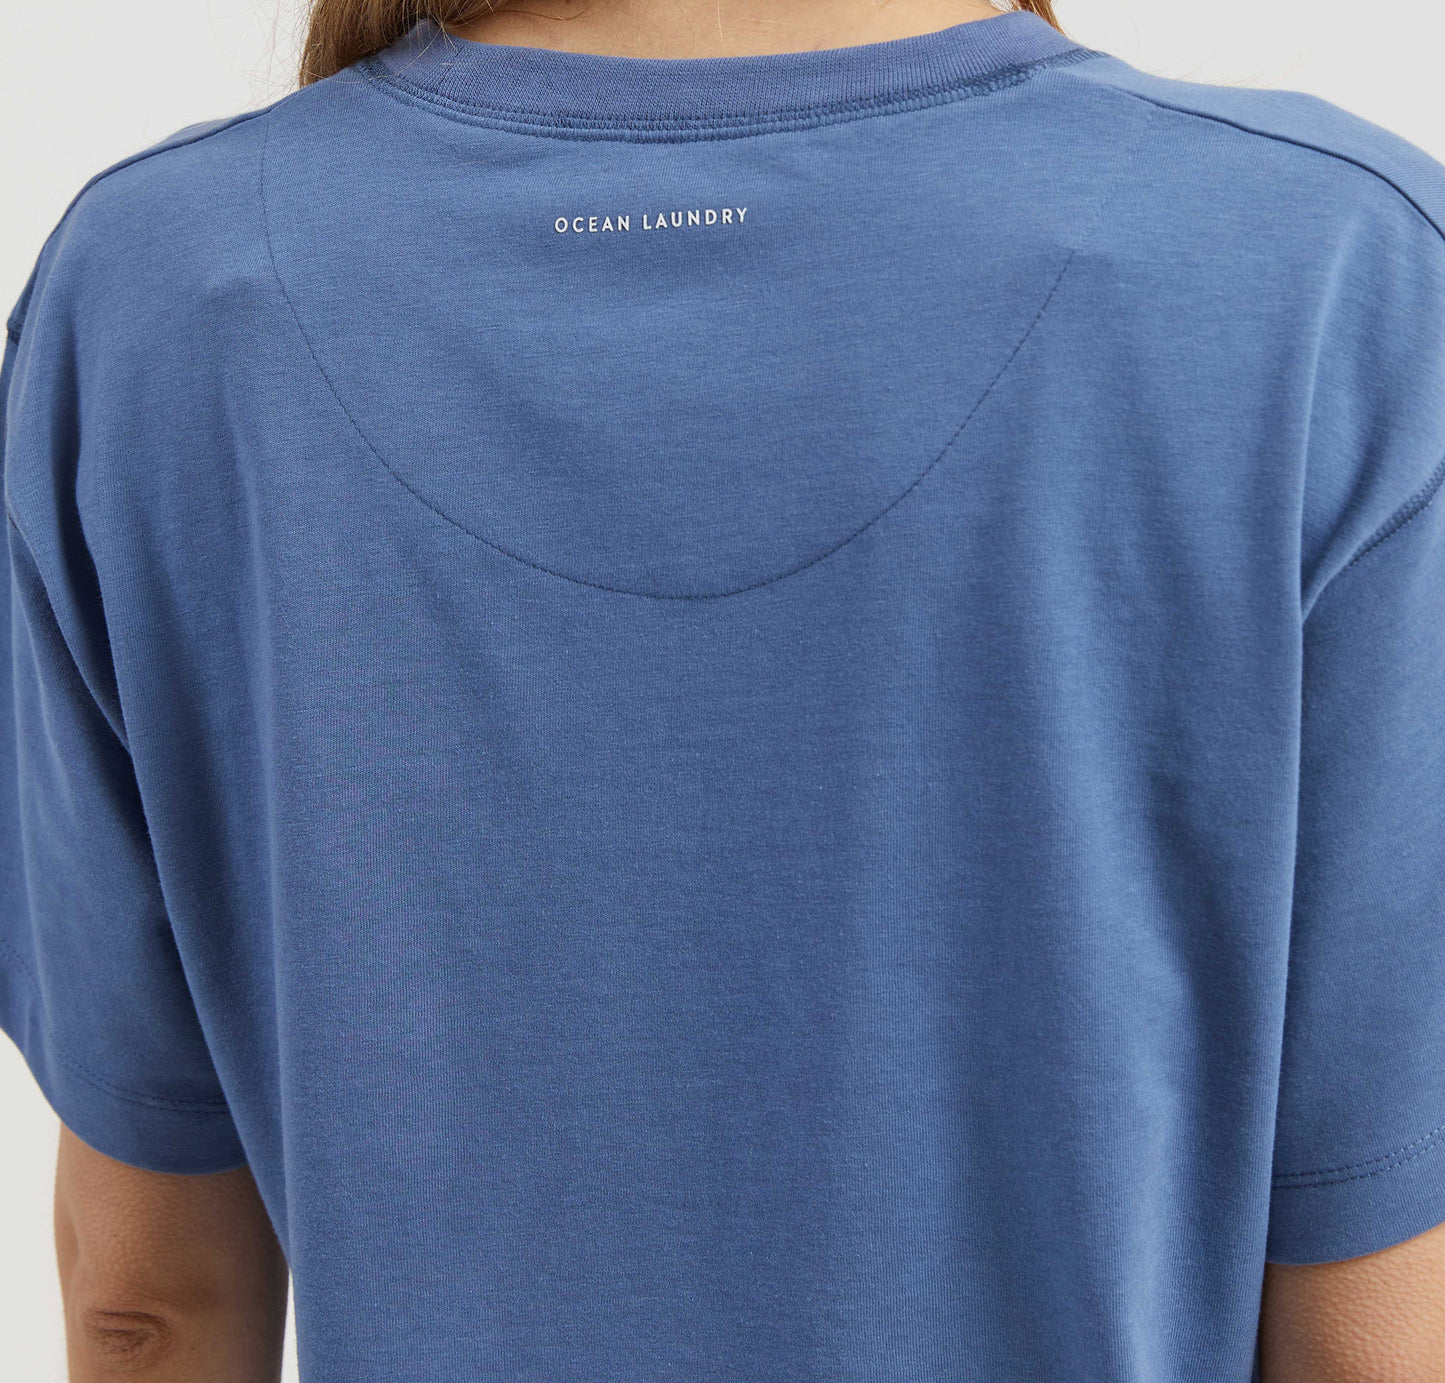 Willow Women's T-shirt - Moonlight Blue